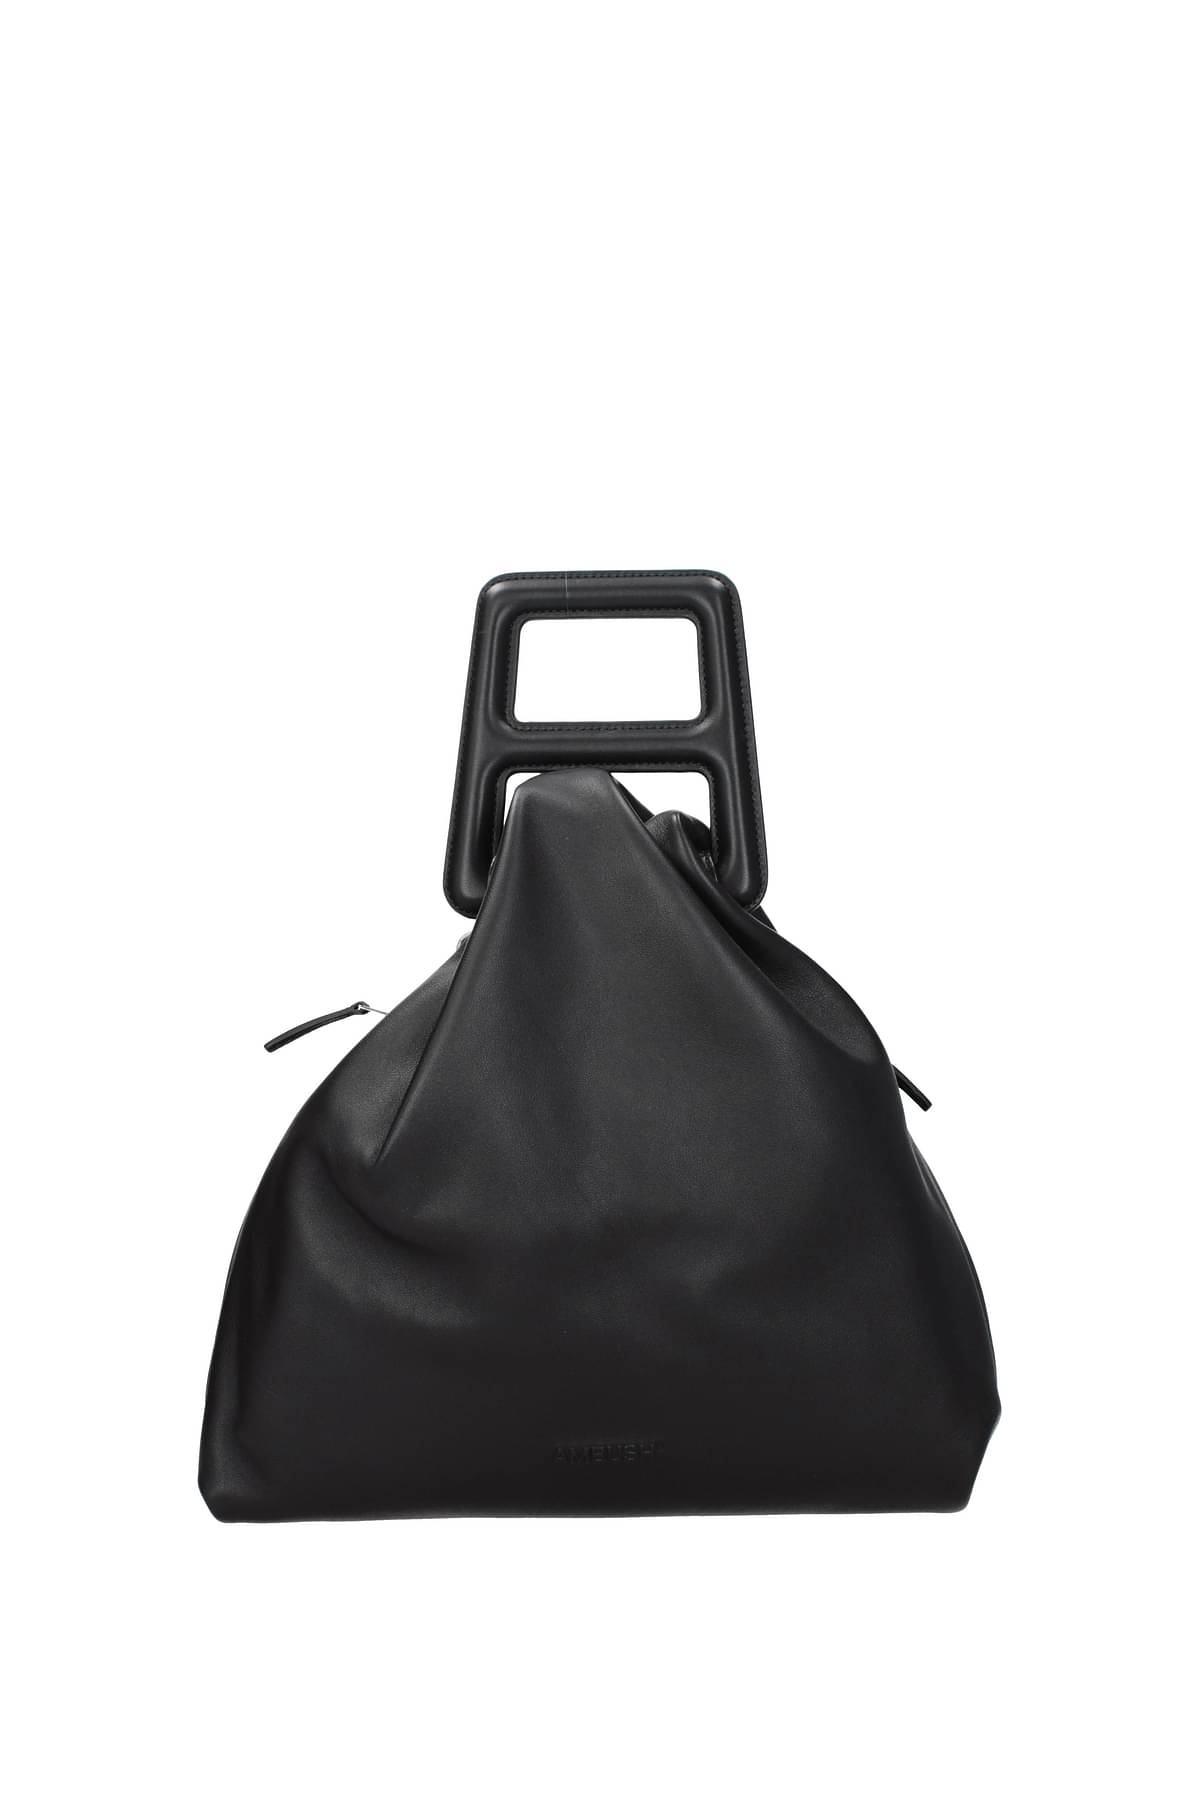 VIntage Prada Medium Leather Bag Brown Shoulder Bag 1990’s